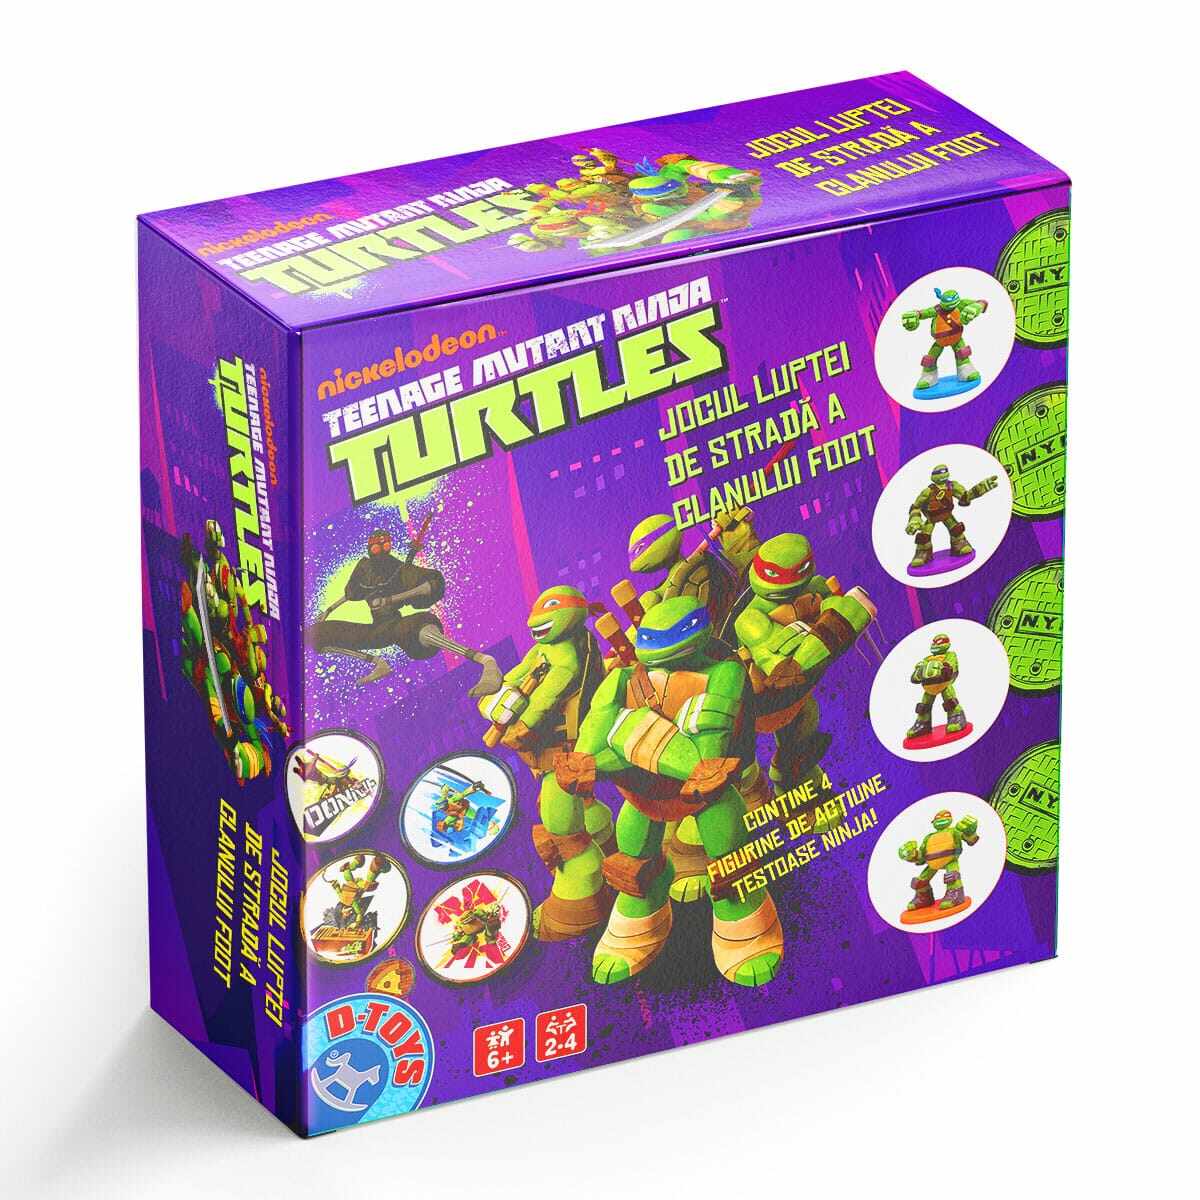 Teenage Mutant Ninja Turtles - Joc de societate cu Țestoasele Ninja